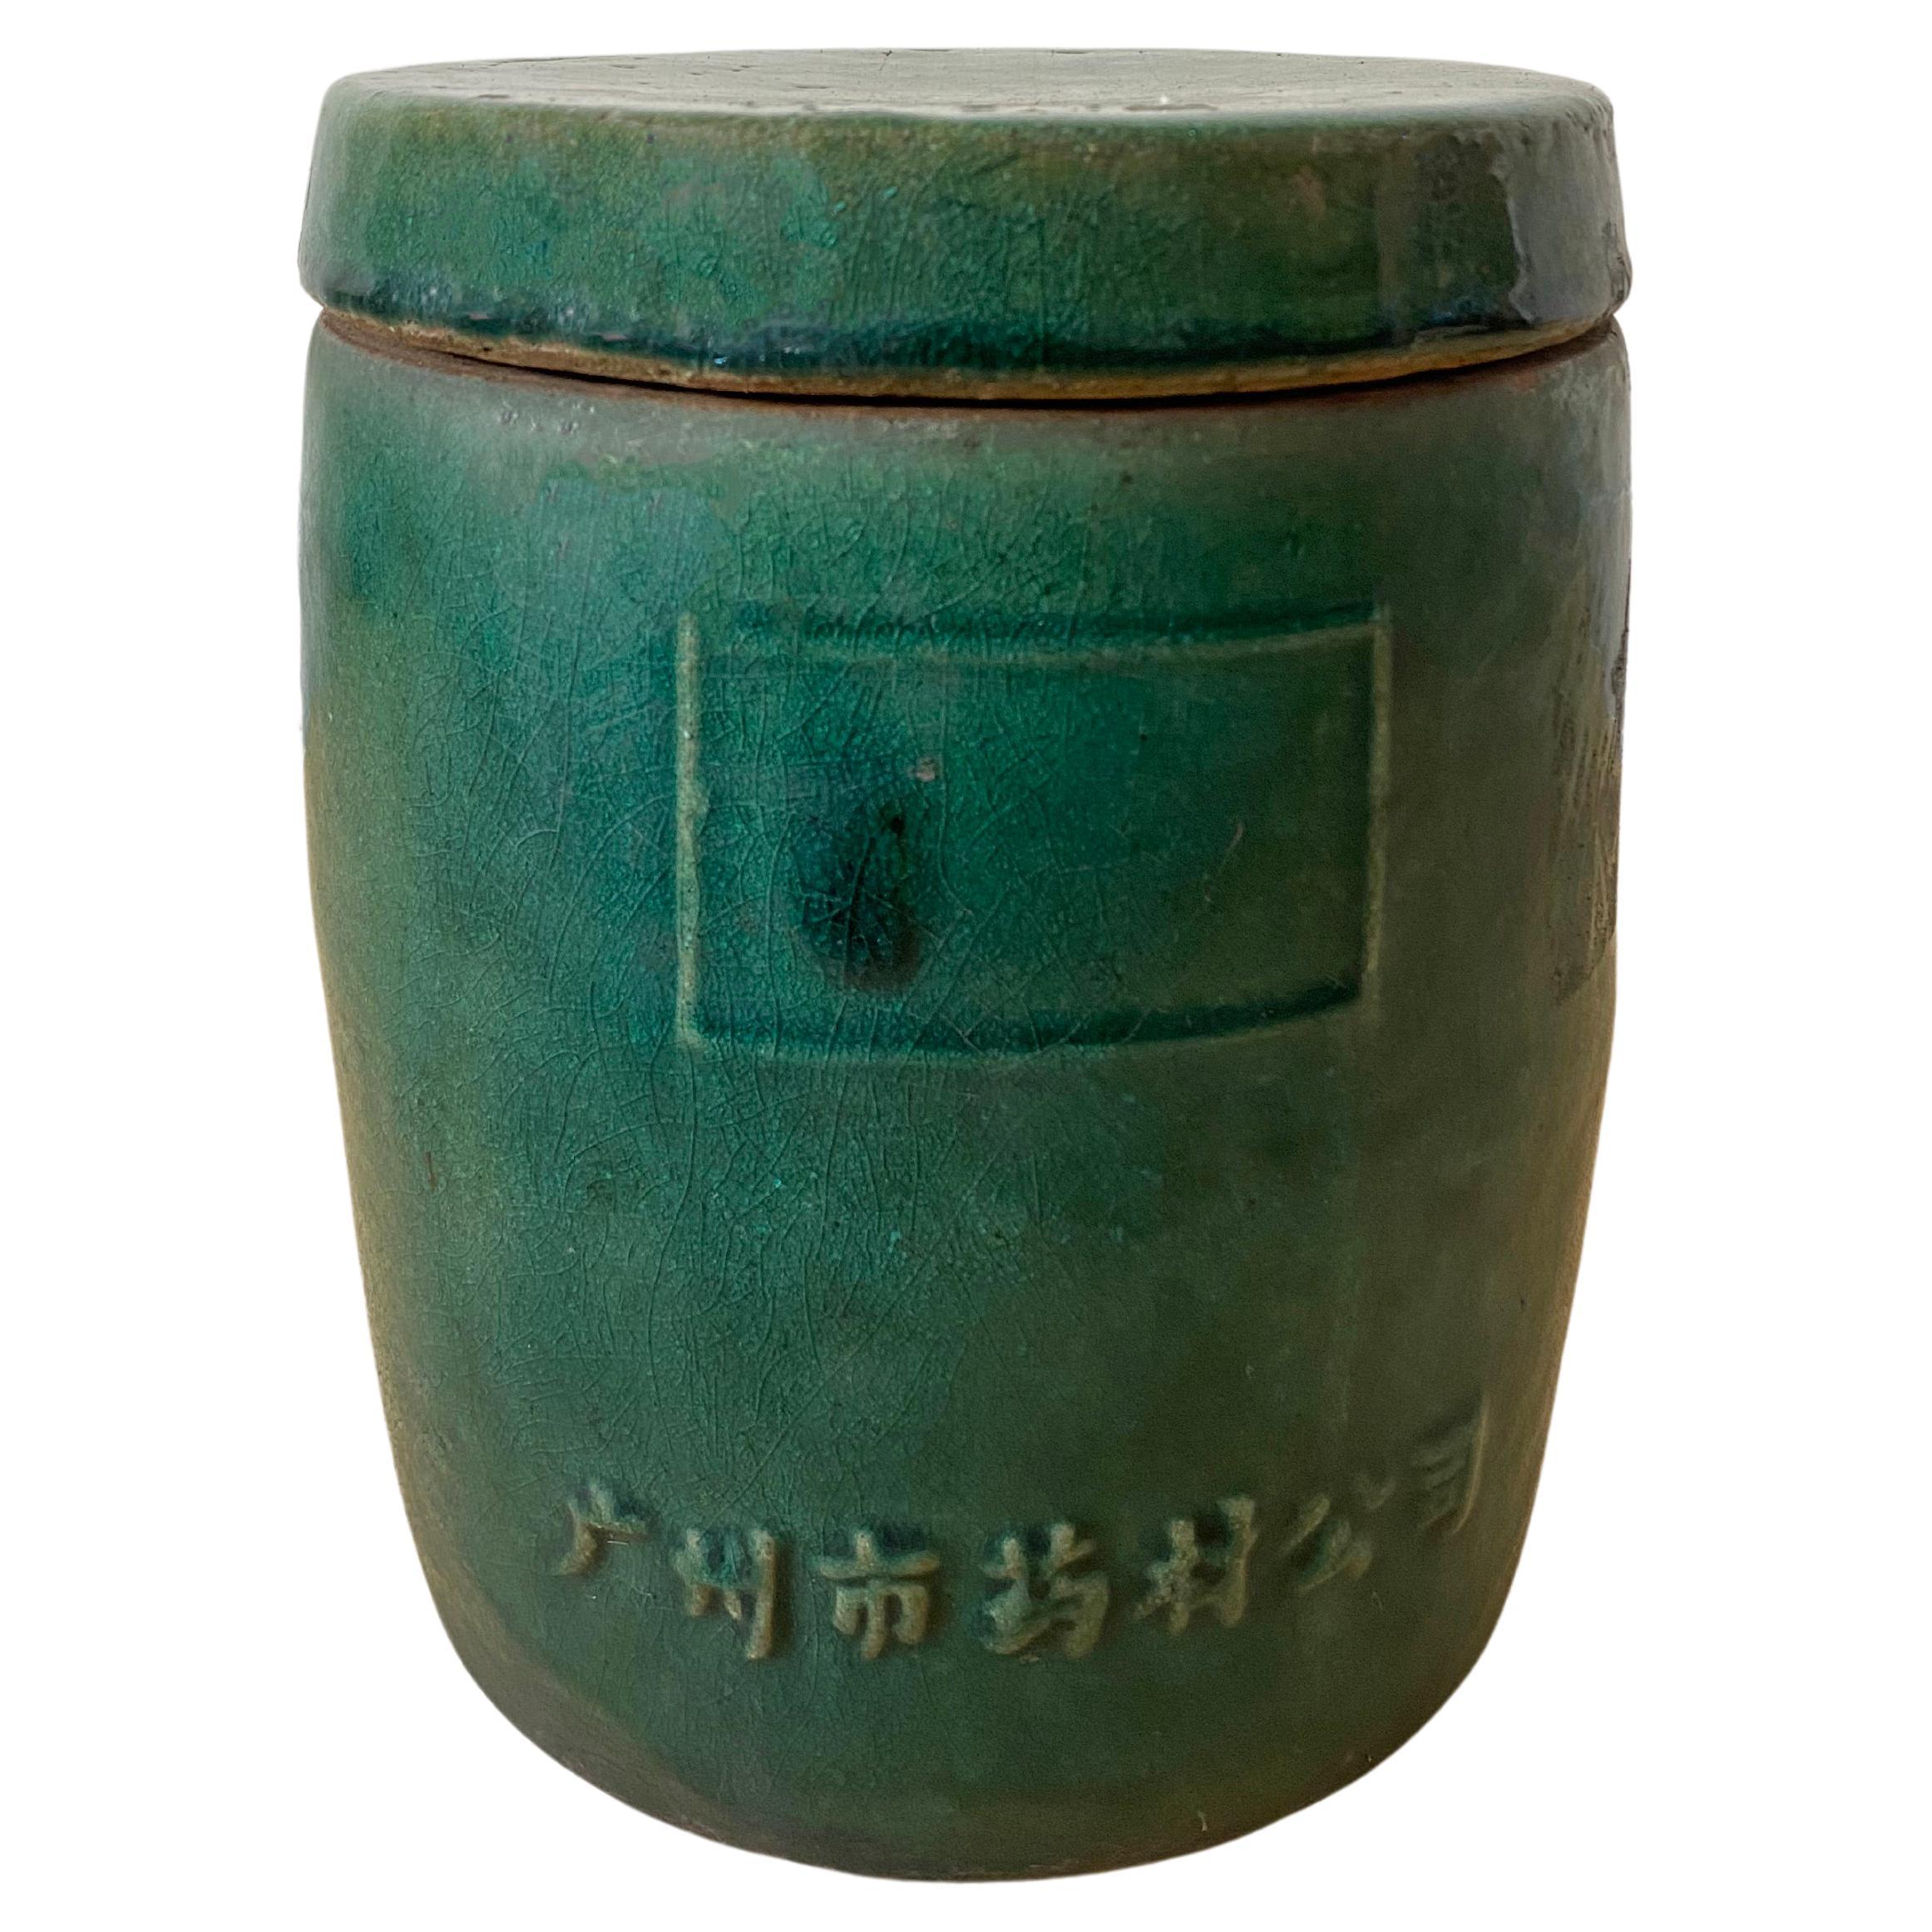 Chinesisches Keramikgefäß der Guangzhou Medicine Company, „Apothecary“, frühes 20. Jahrhundert